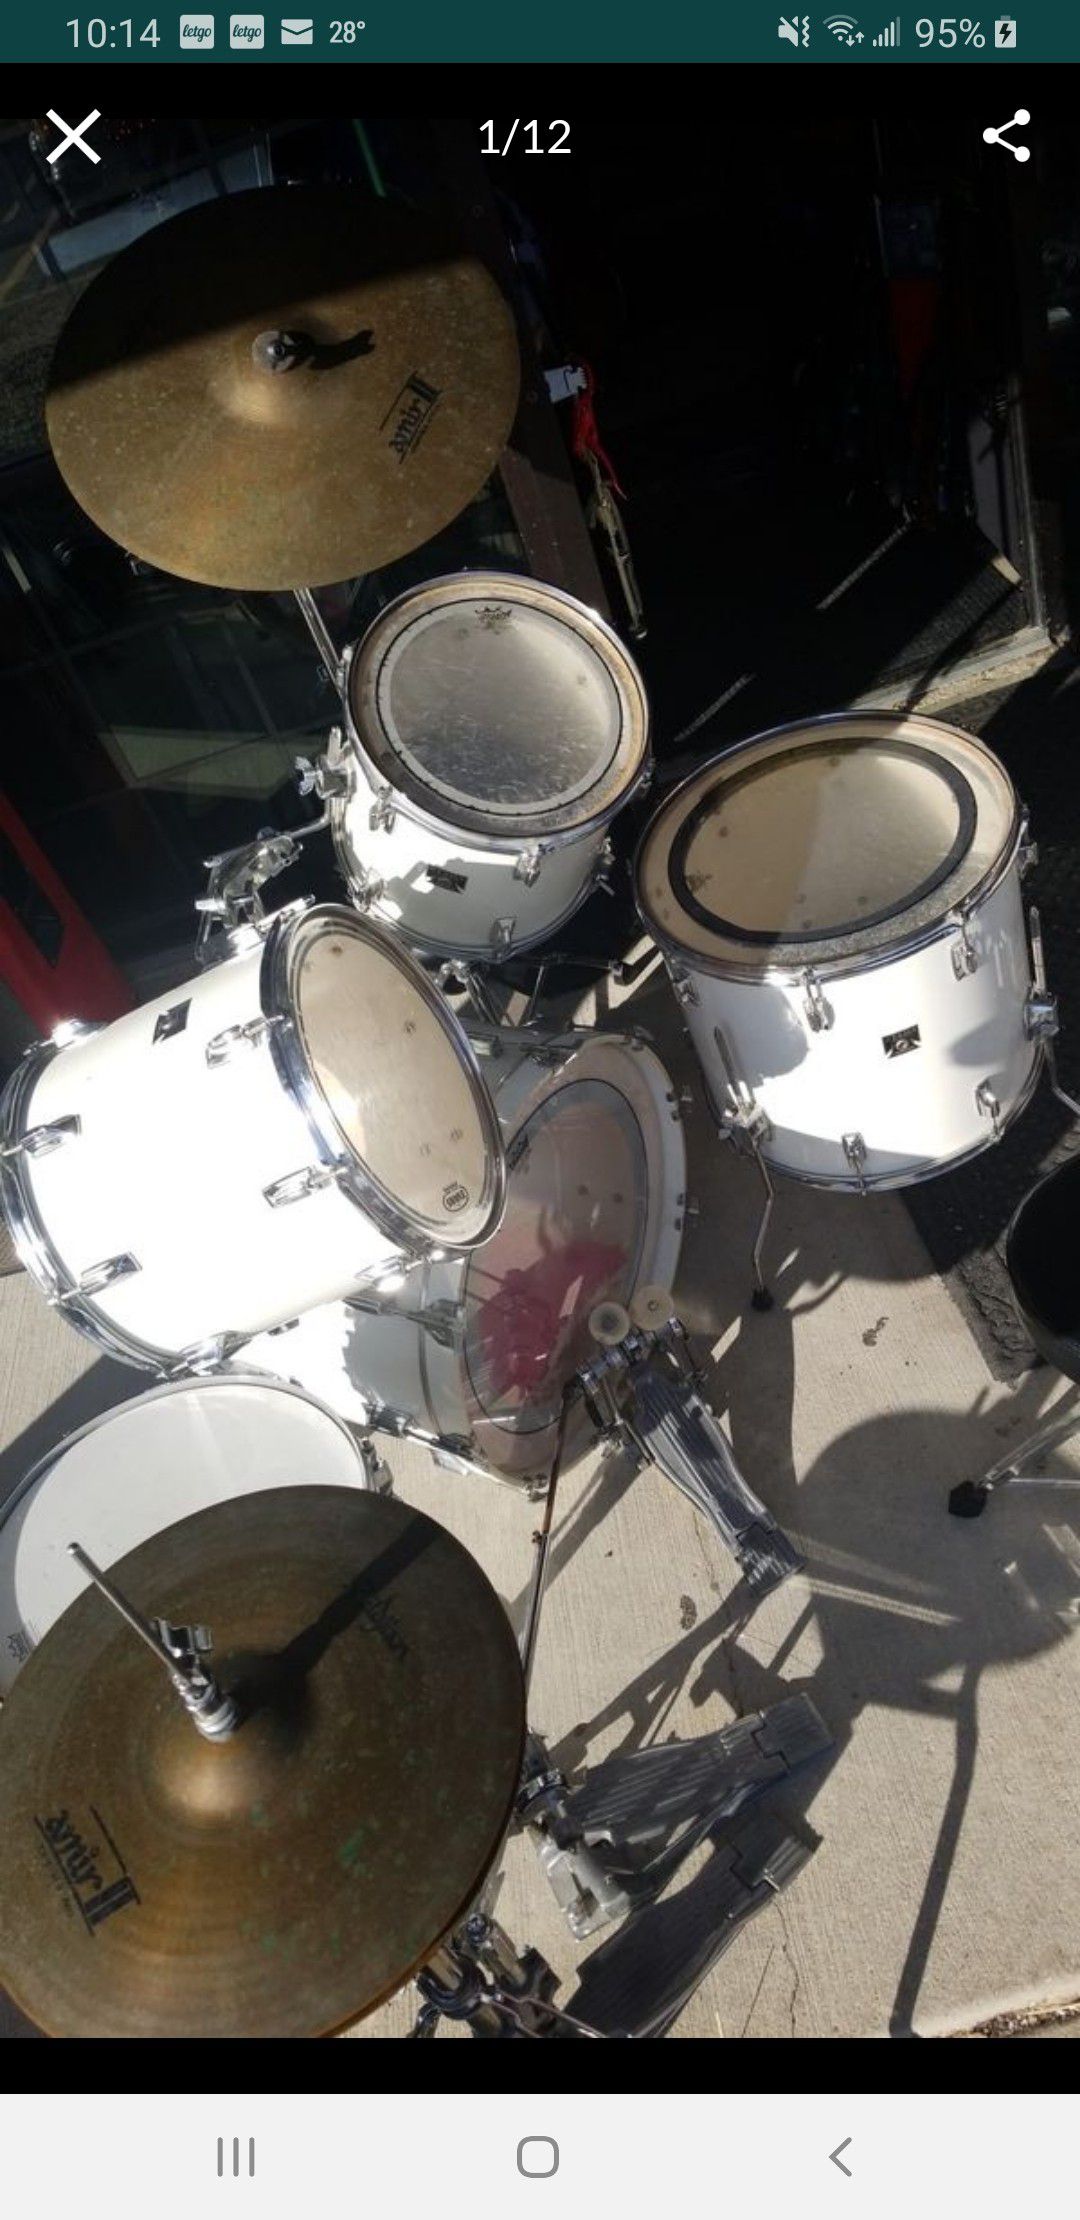 Complete tama superstar drum set with cymbals,stands,18" floor tom